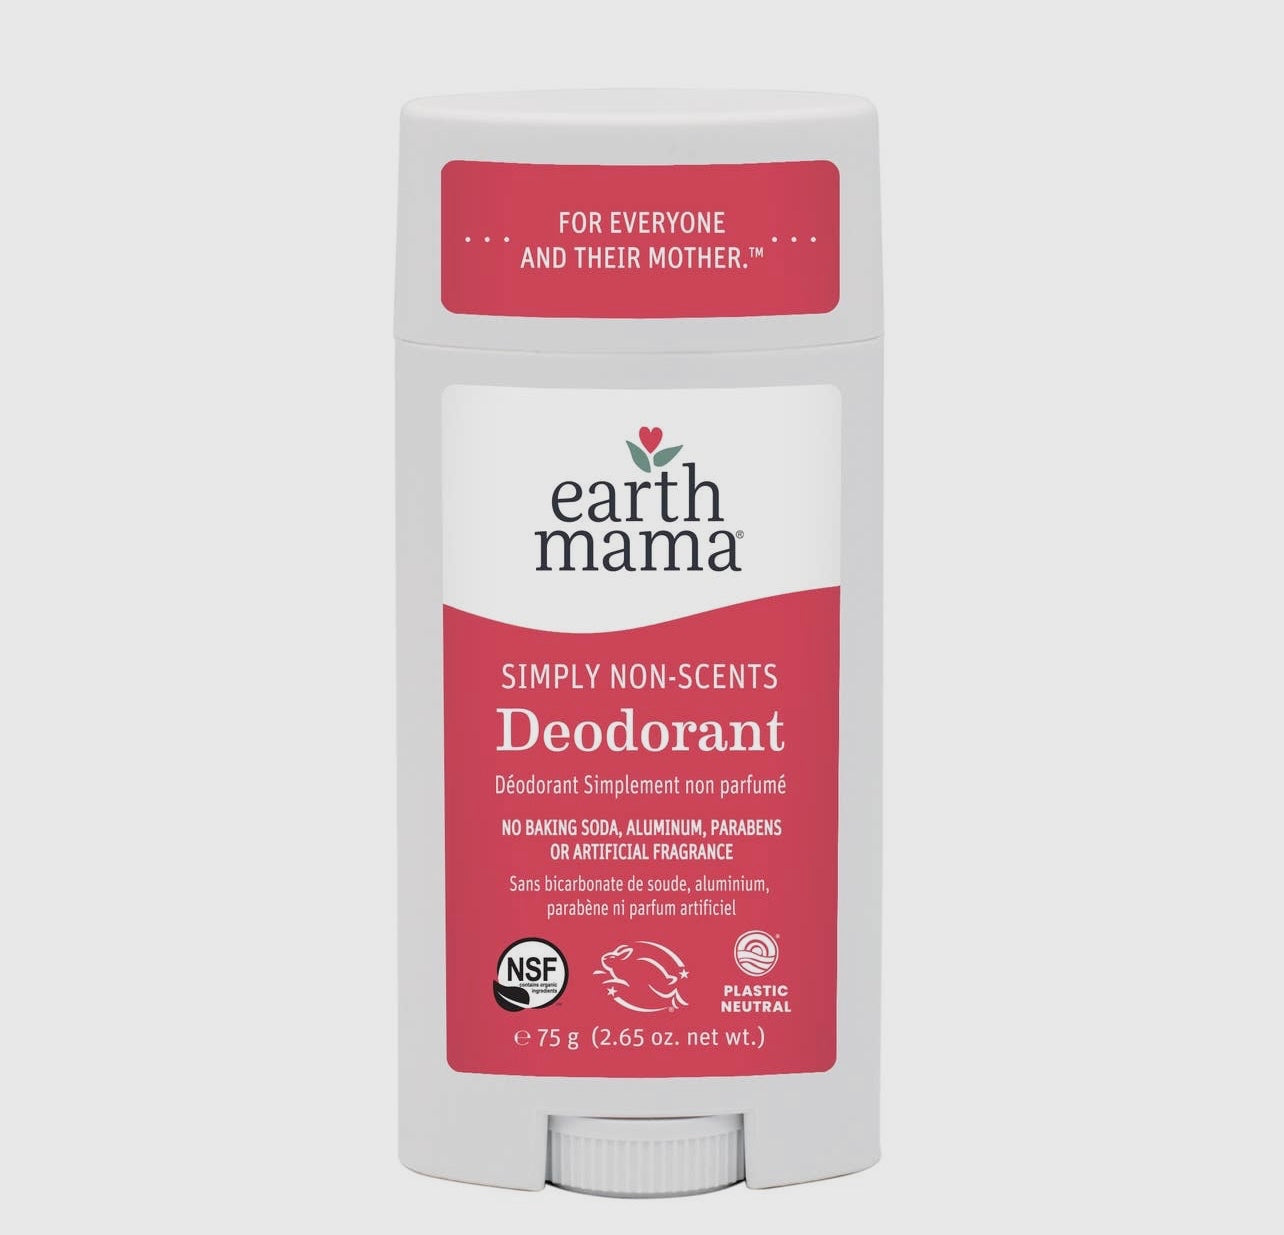 Simply Non-scents Deodorant